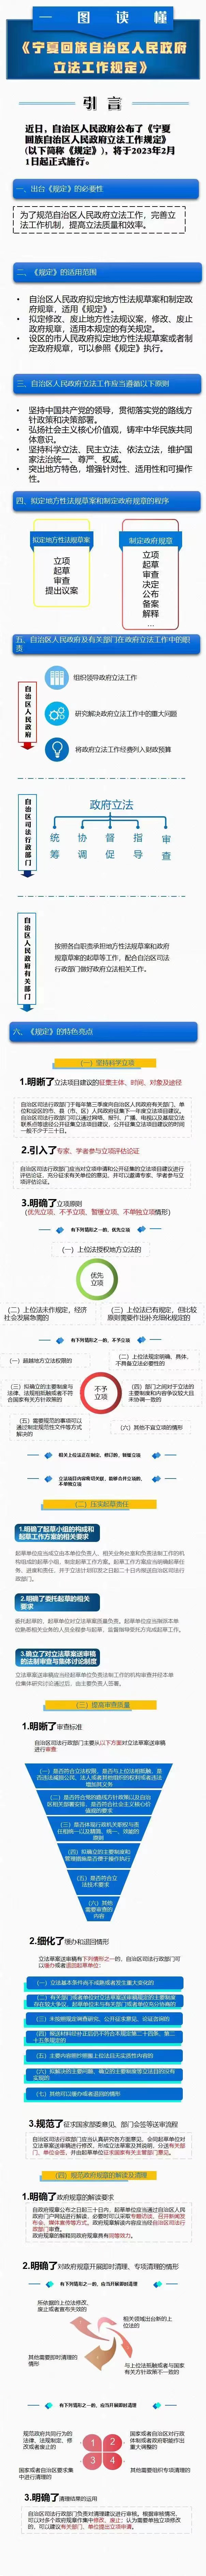 《宁夏回族自治区人民政府立法工作规定》图解(图1)